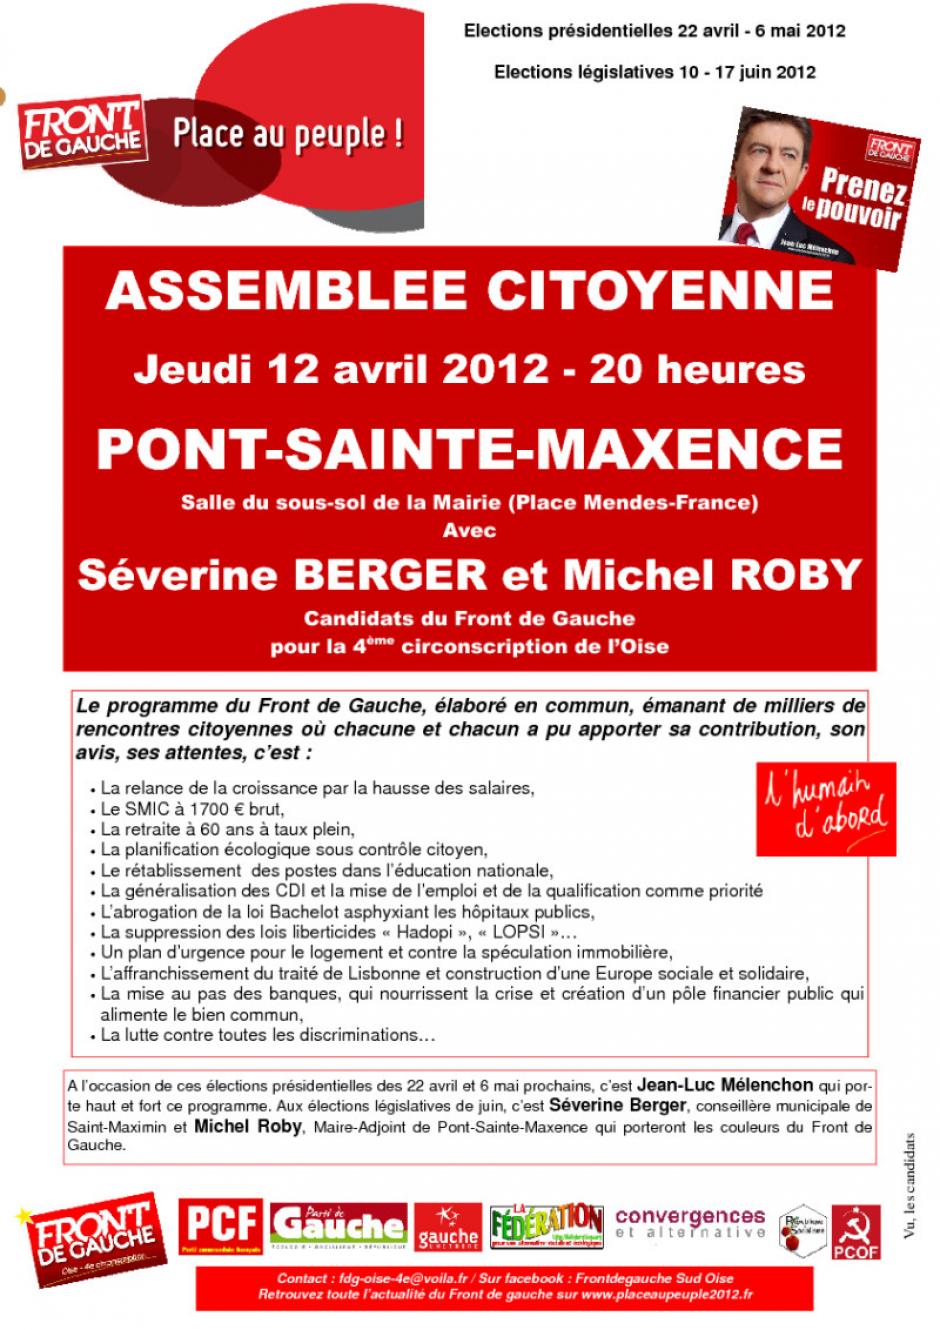 12 avril, Pont-Sainte-Maxence - Assemblée citoyenne du Front de gauche - Affiche